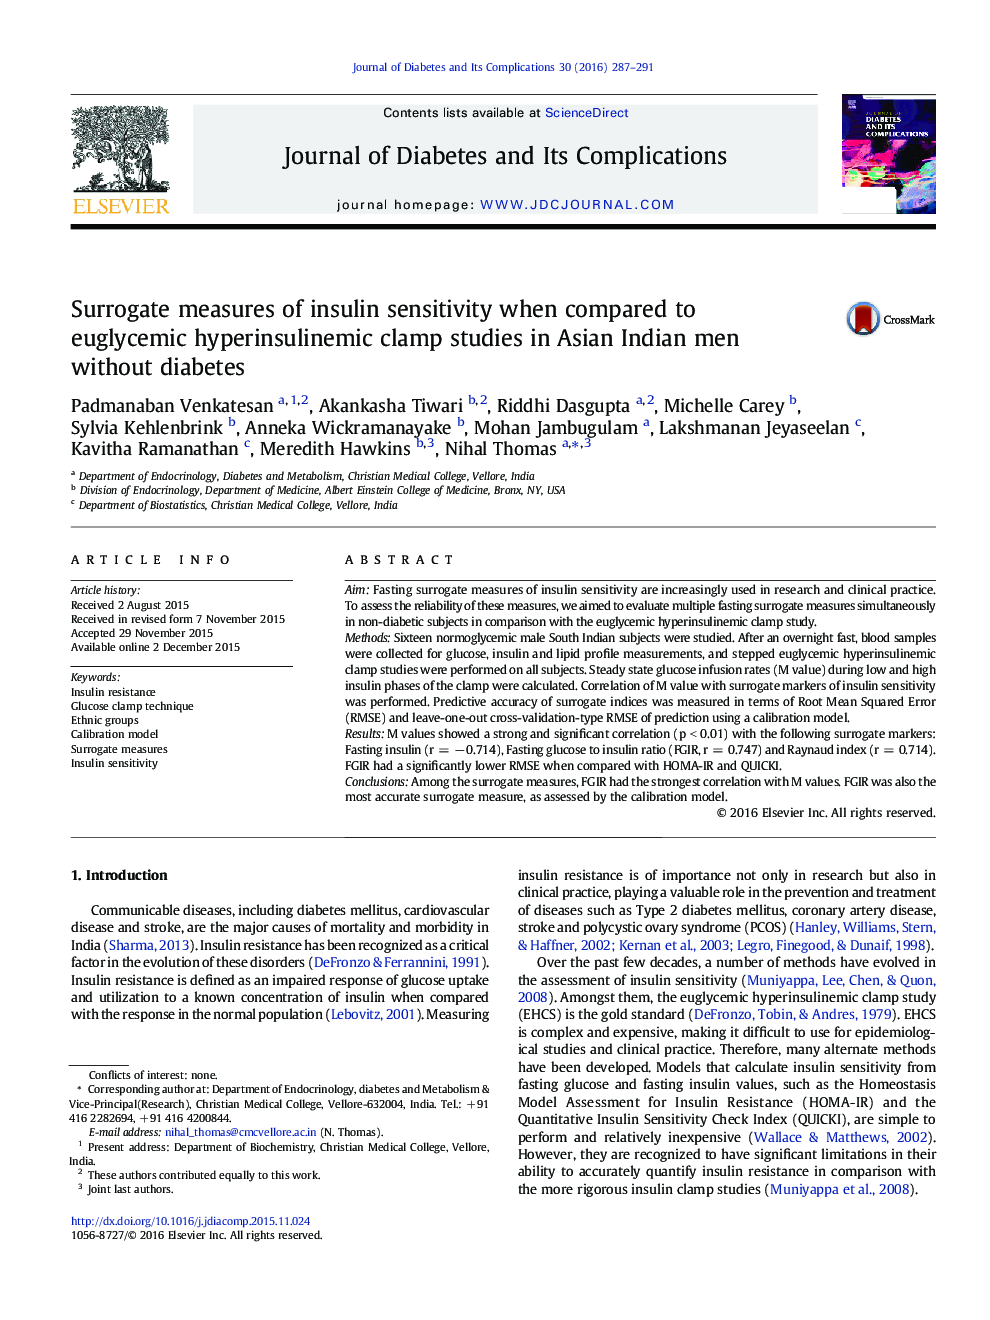 اندازه گیری های غیرمستقیم حساسیت به انسولین در مقایسه با مطالعات گیره ی هیپسینولینمی یوگلیسمی مردان در مردان آسیایی هند بدون دیابت 